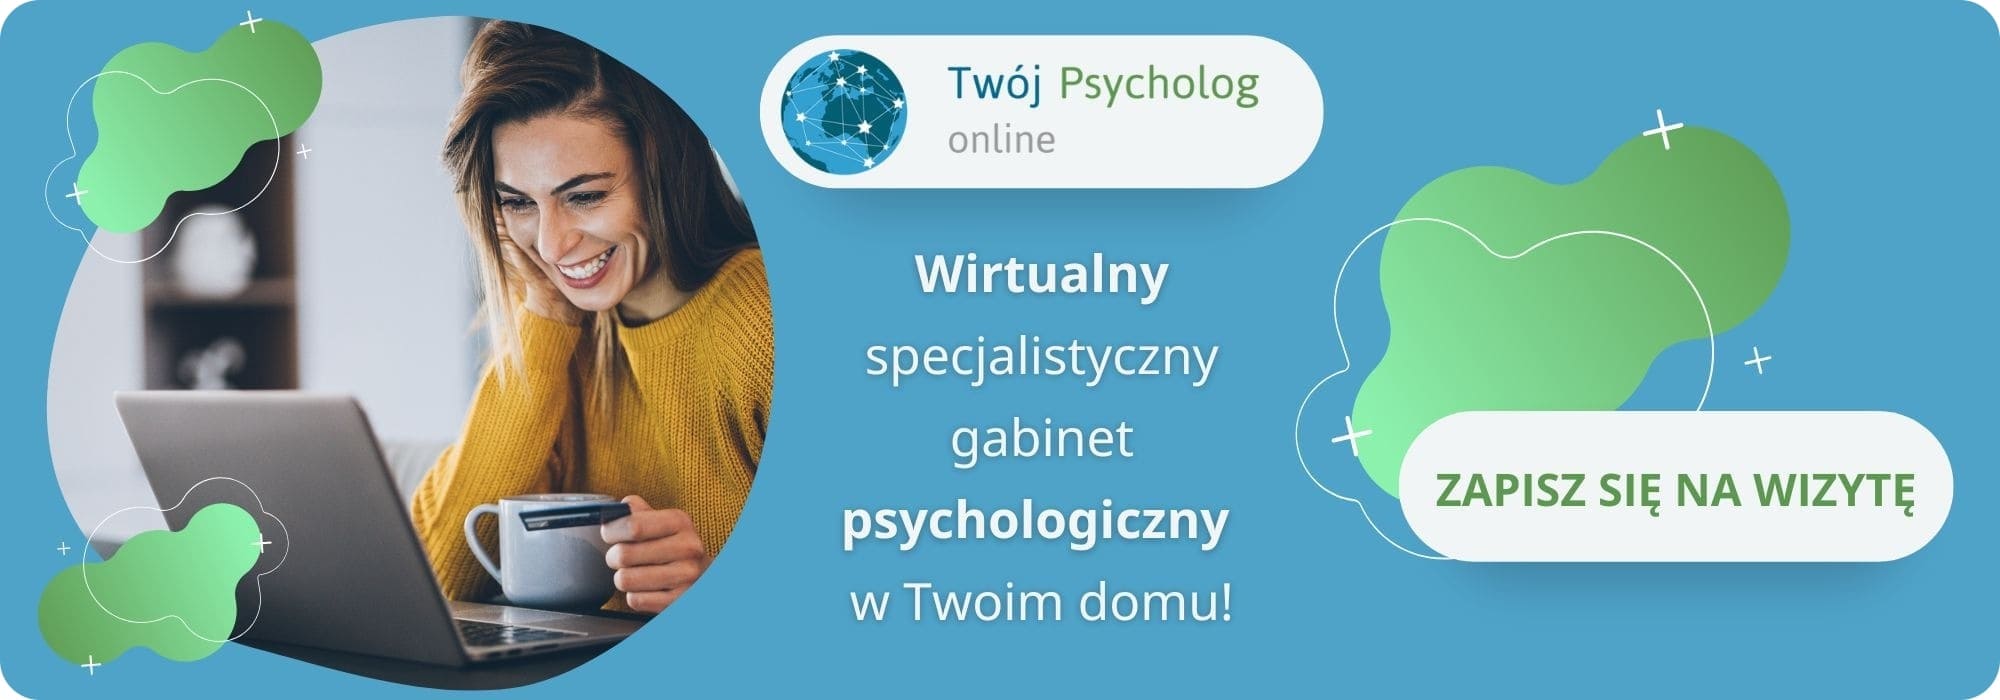 psychoterapia online - umów wizytę u psychologa